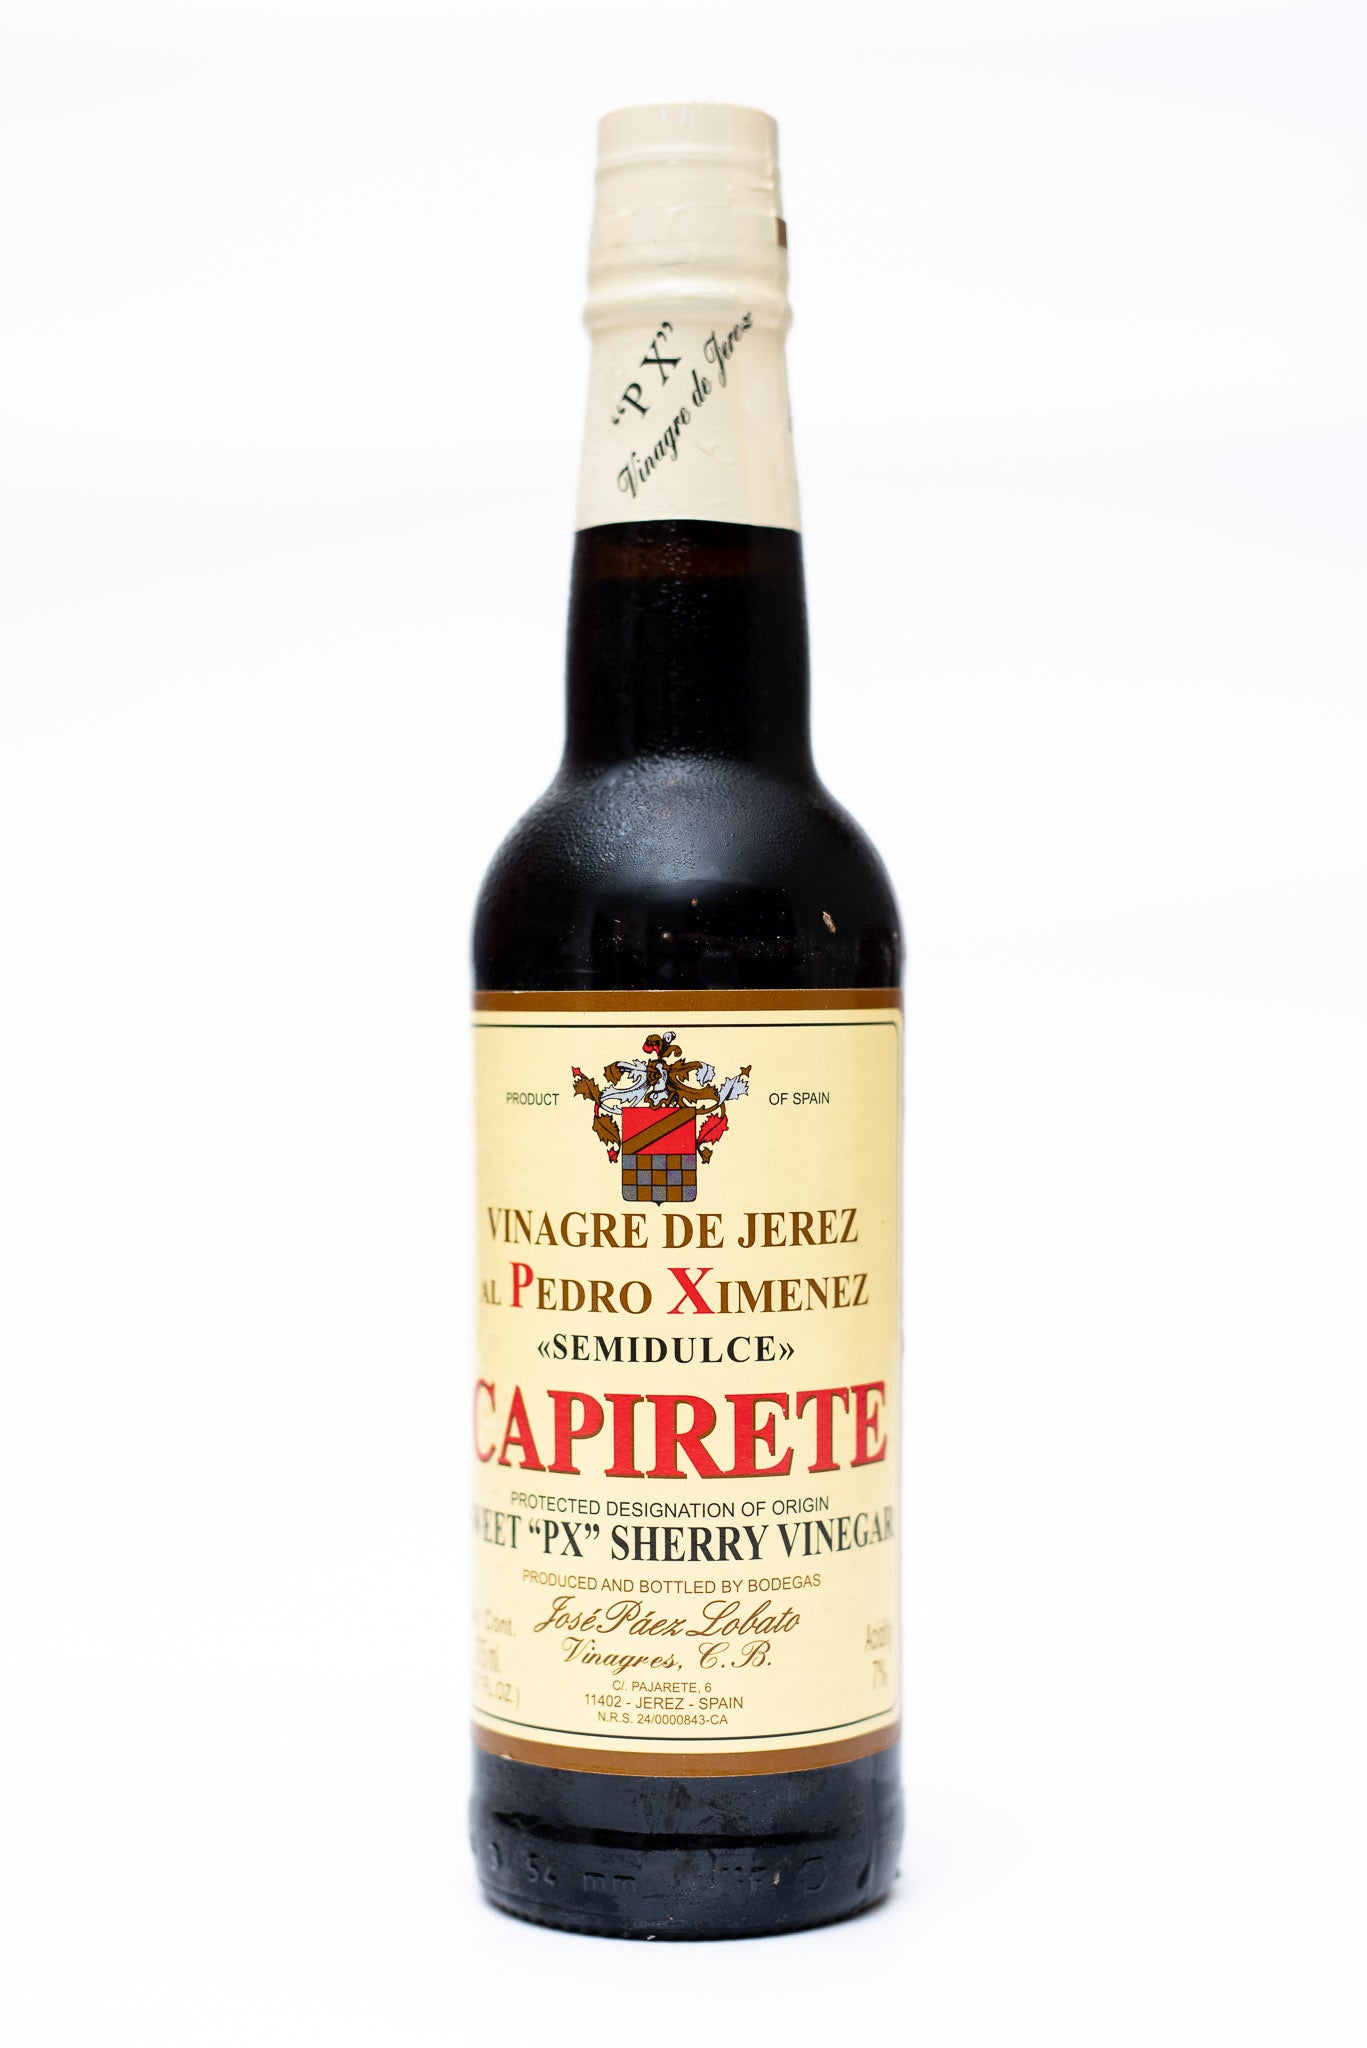 Capirete Pedro Ximenez Sweet Sherry Vinegar - 375ml